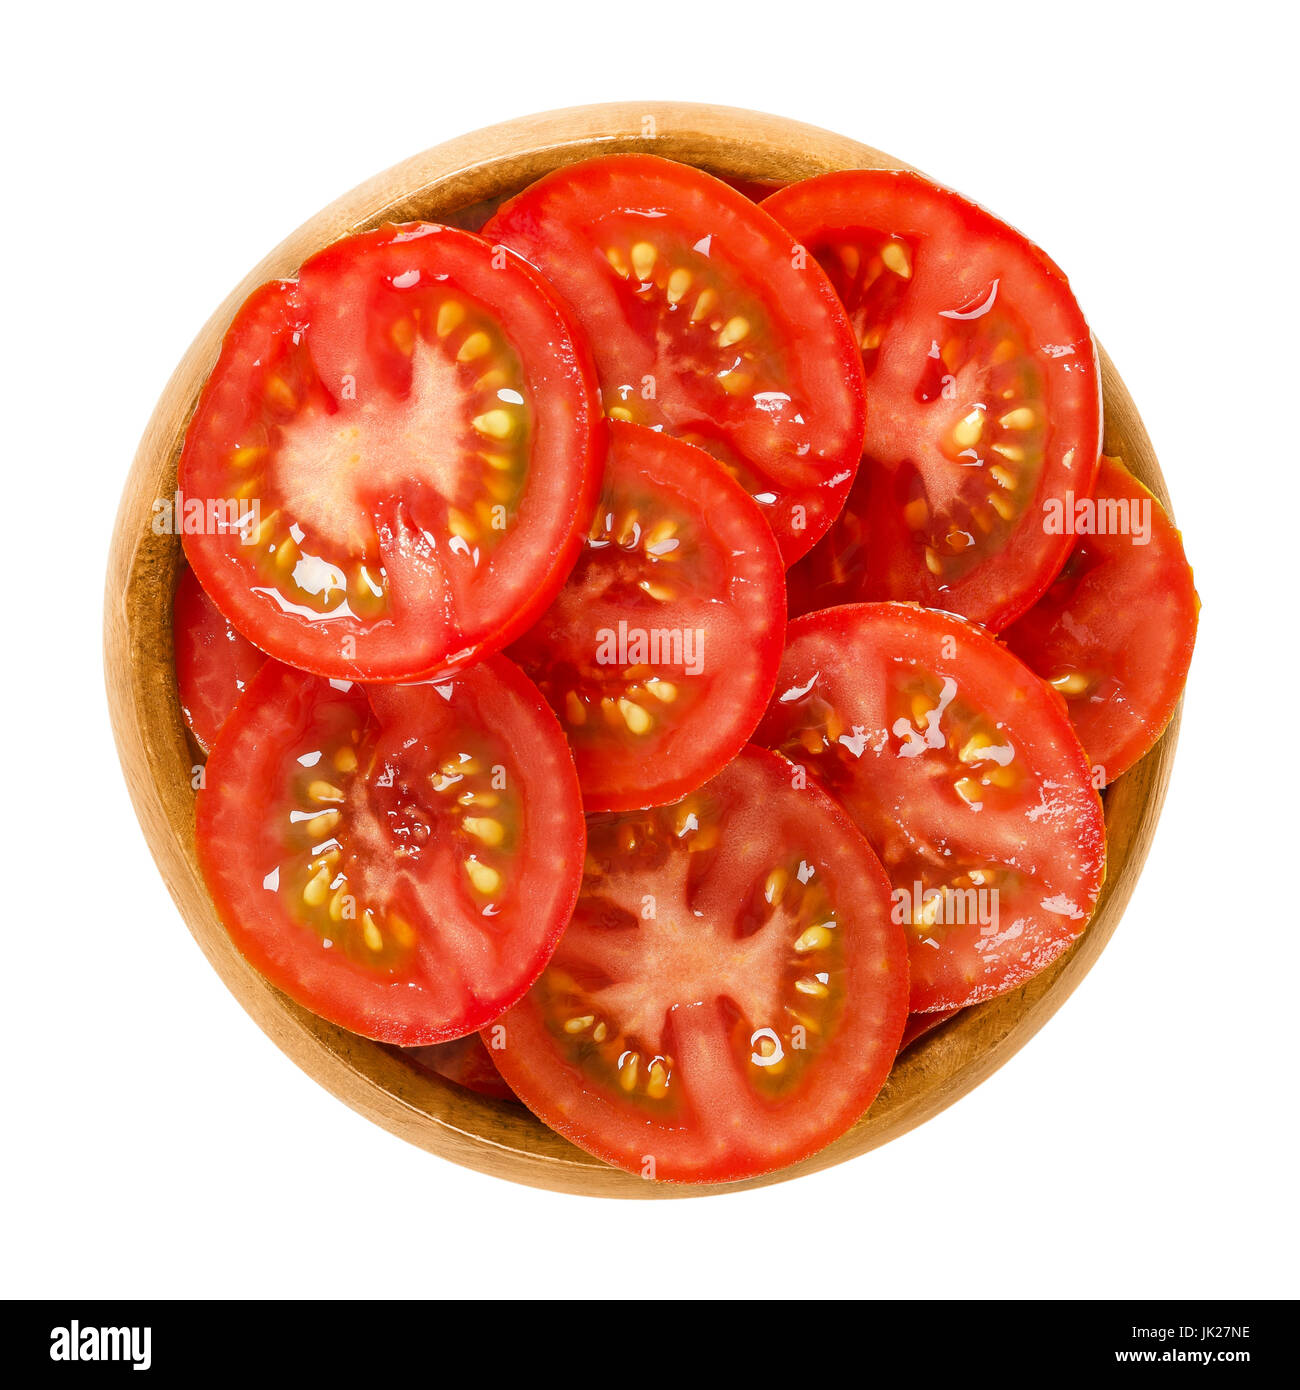 Rodajas de tomate en el recipiente de madera. Comestible y madura fruta cruda de Solanum lycopersicum con color rojo, cortados en finas rodajas. Aisladas de alimentos macro fotografía. Foto de stock